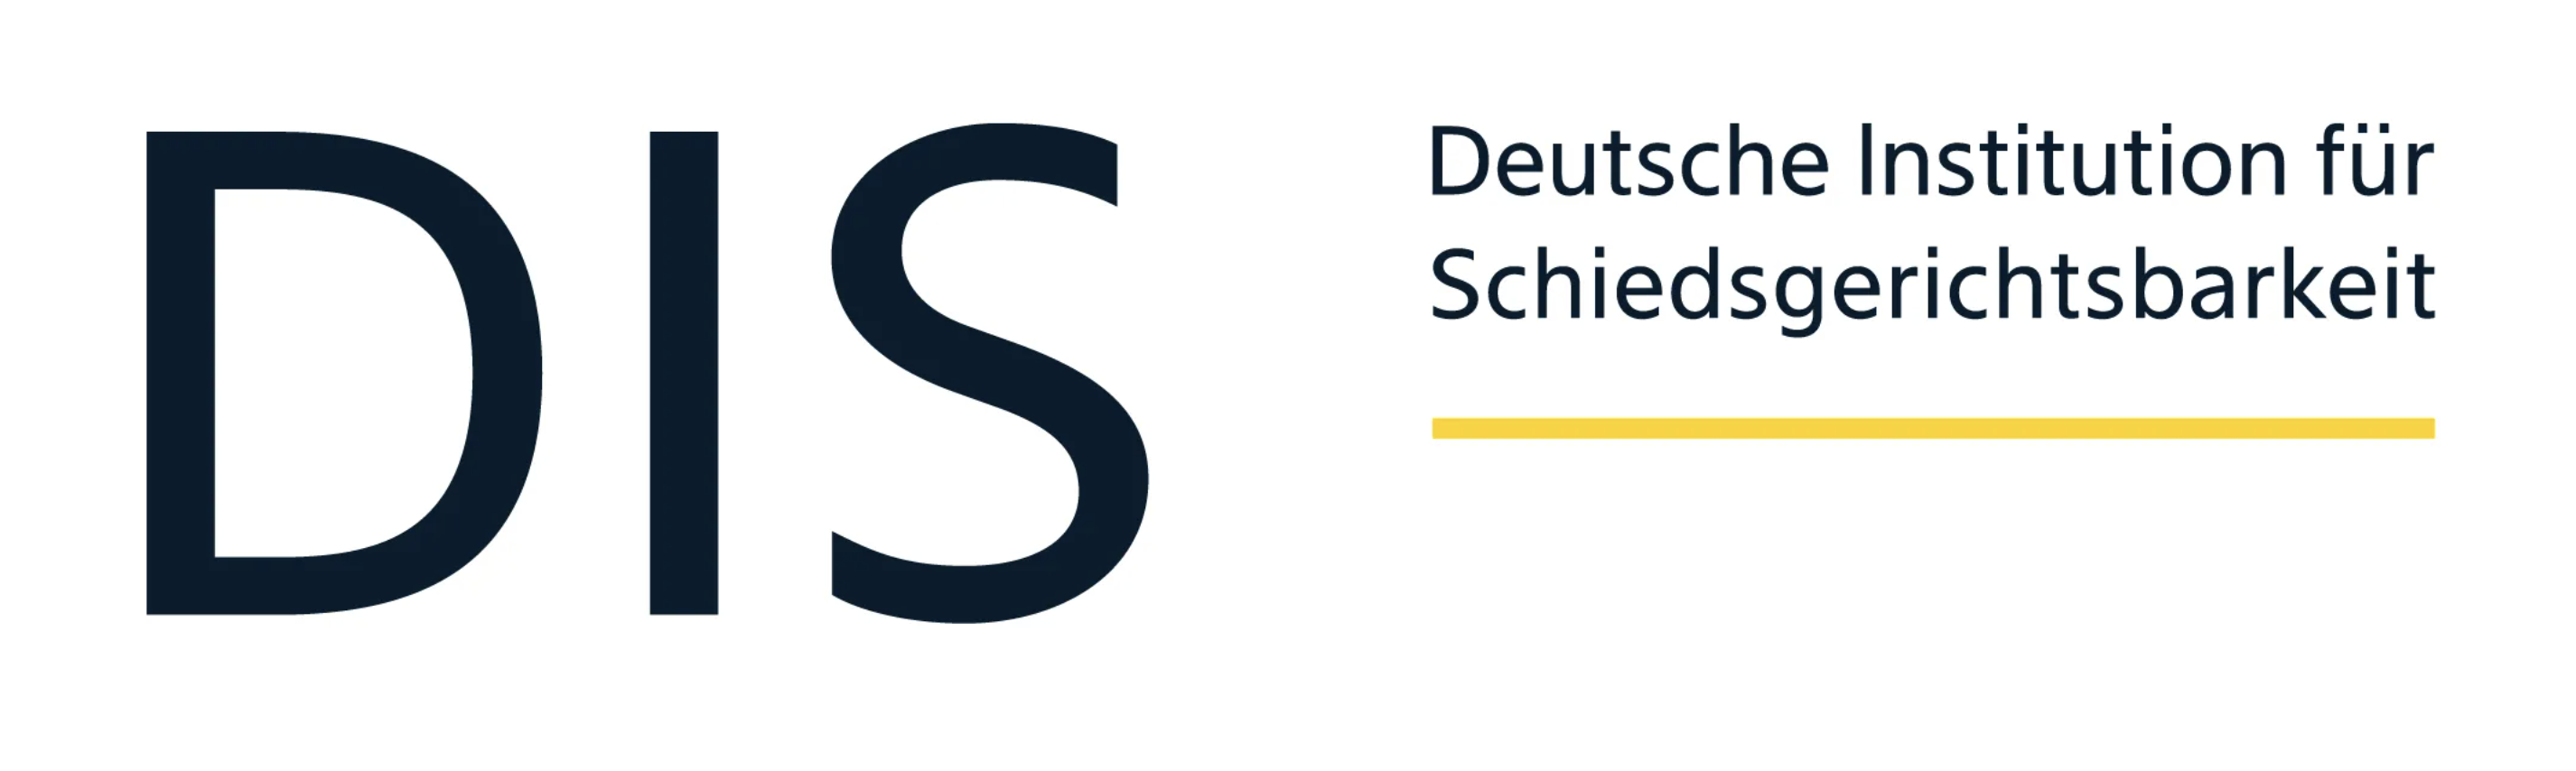 Deutsche Institution für Schiedsgerichtsbarkeit e.V. (DIS)